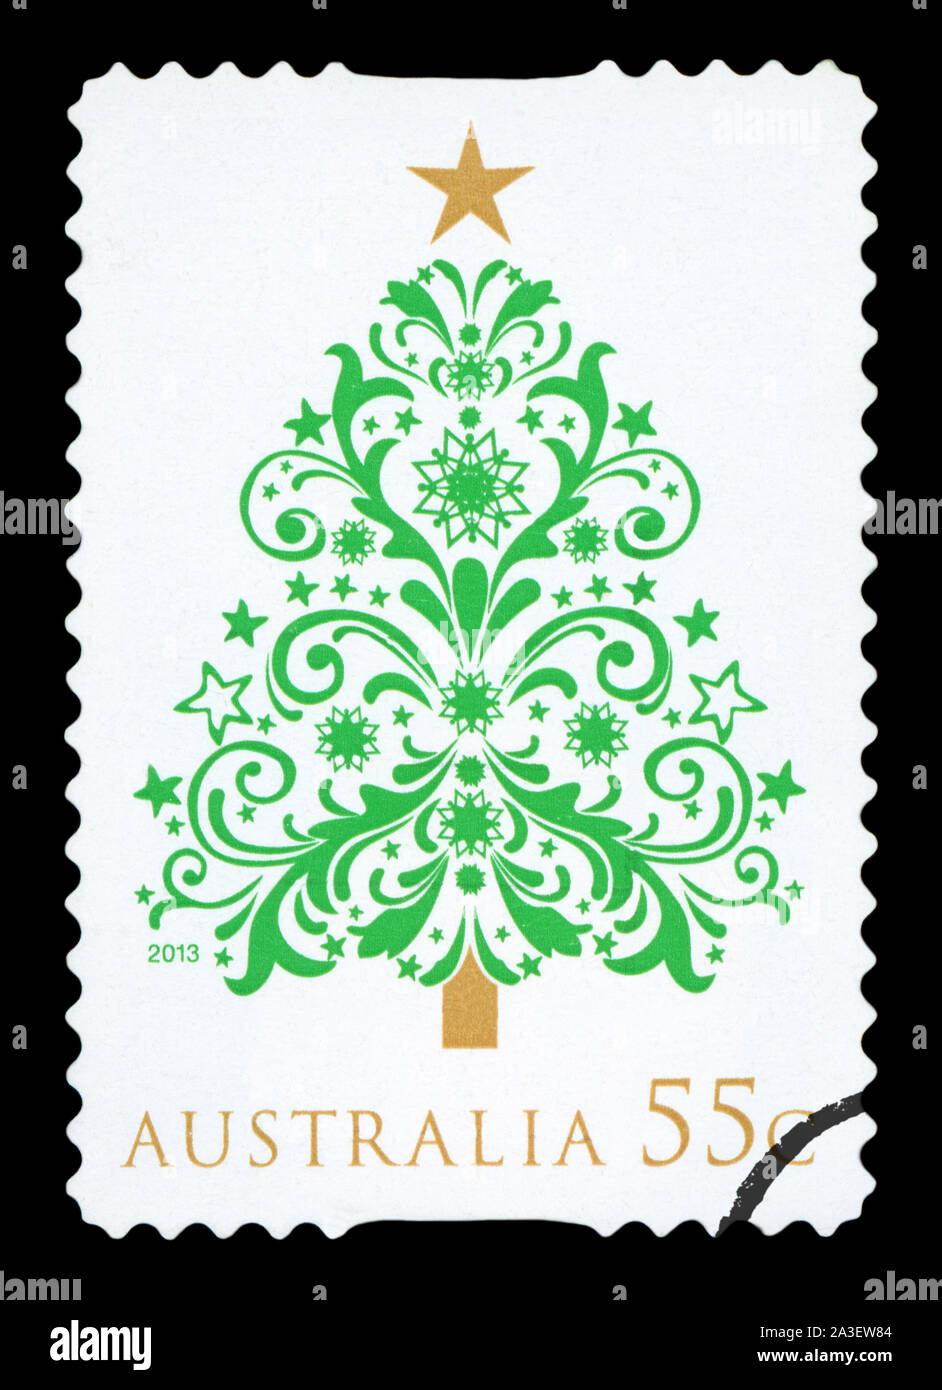 L'AUSTRALIE - circa 2013 : un timbre-poste utilisé à partir de l'Australie, représentant une illustration de l'arbre de Noël, vers 2013. Banque D'Images